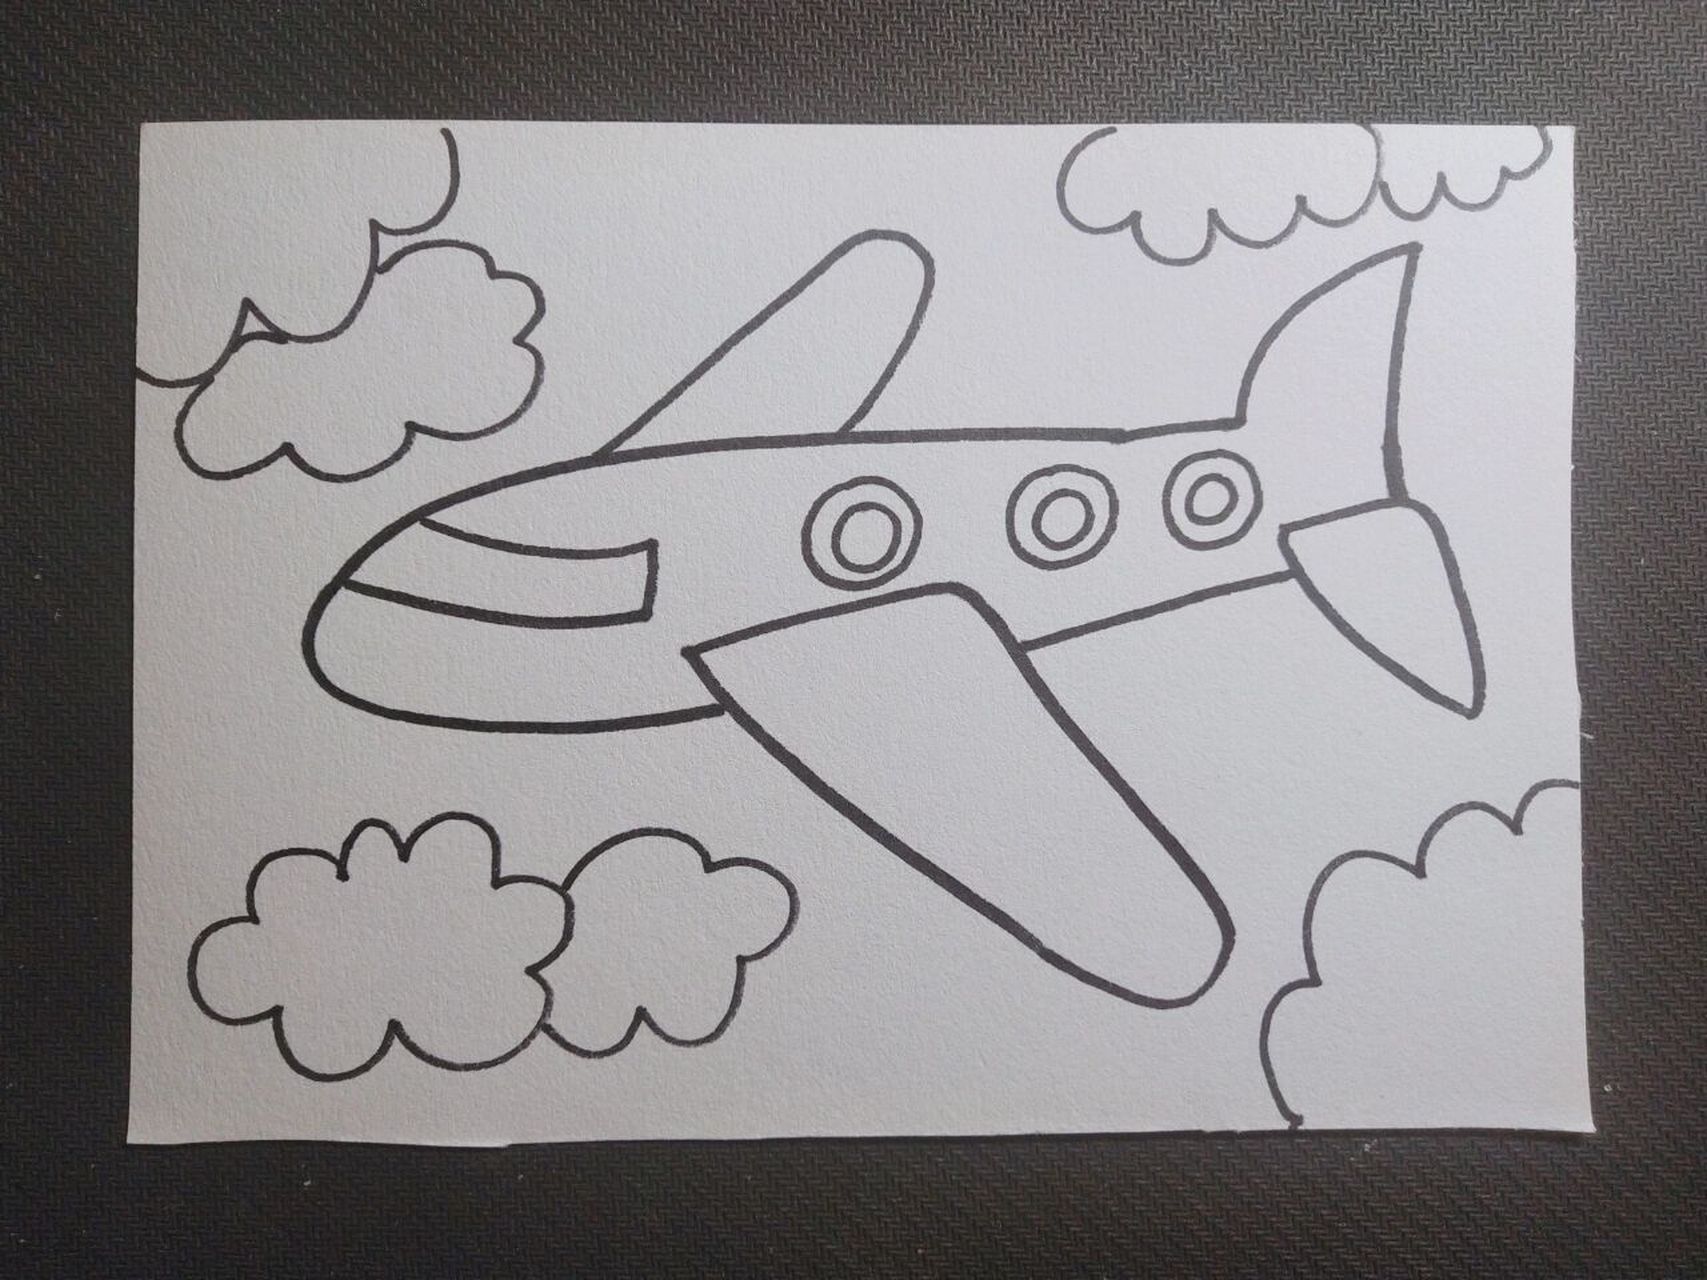 飞机怎样画帅气图片